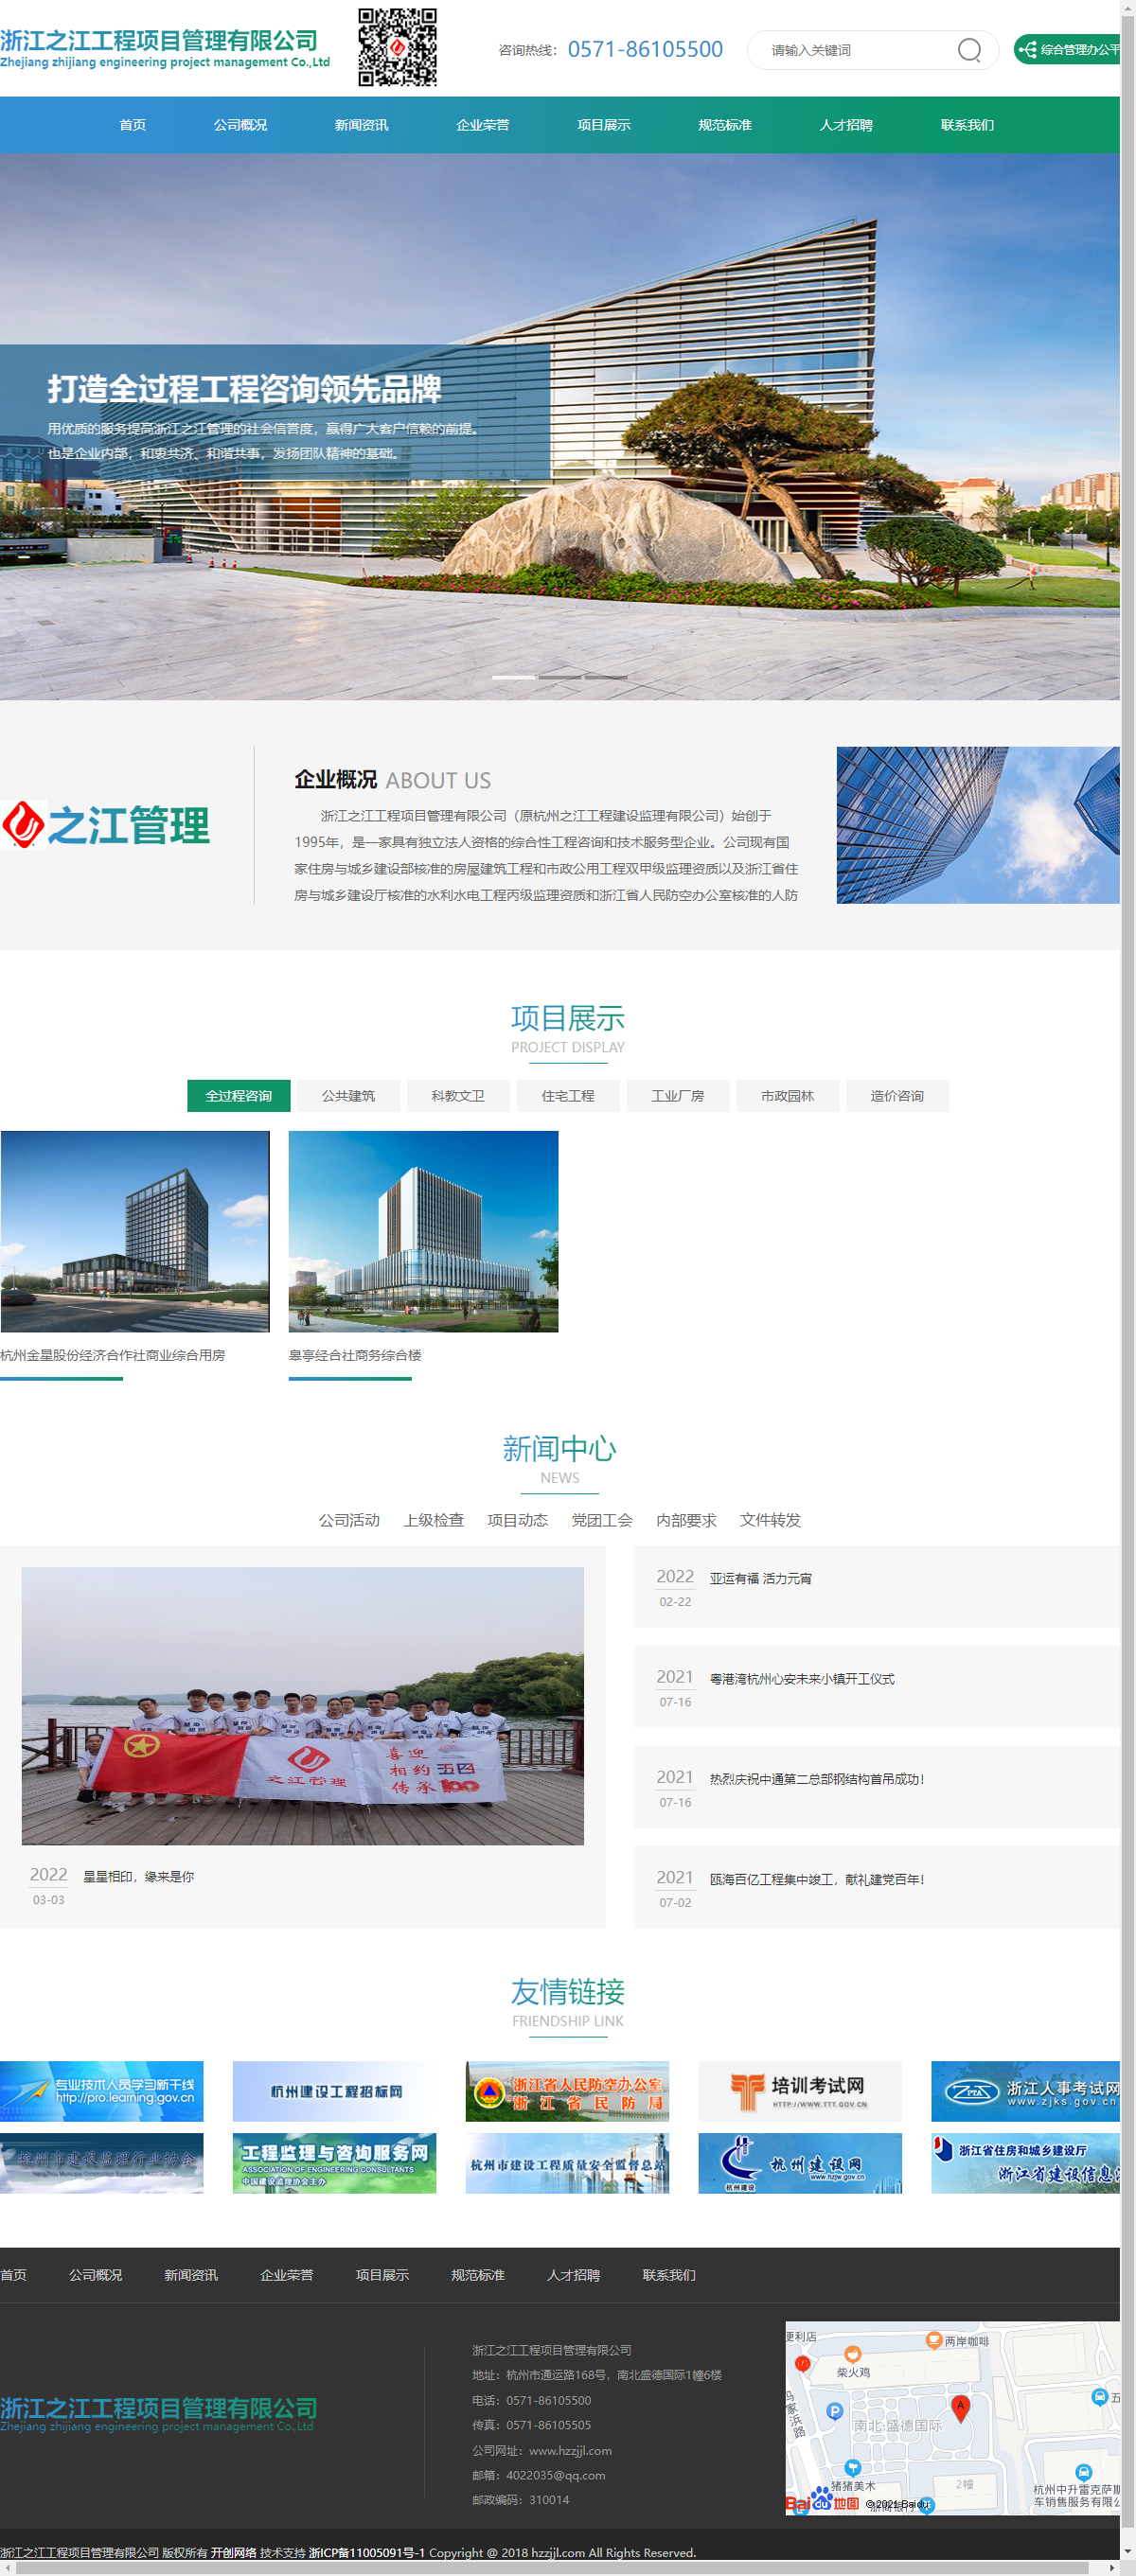 浙江之江工程项目管理有限公司网站案例